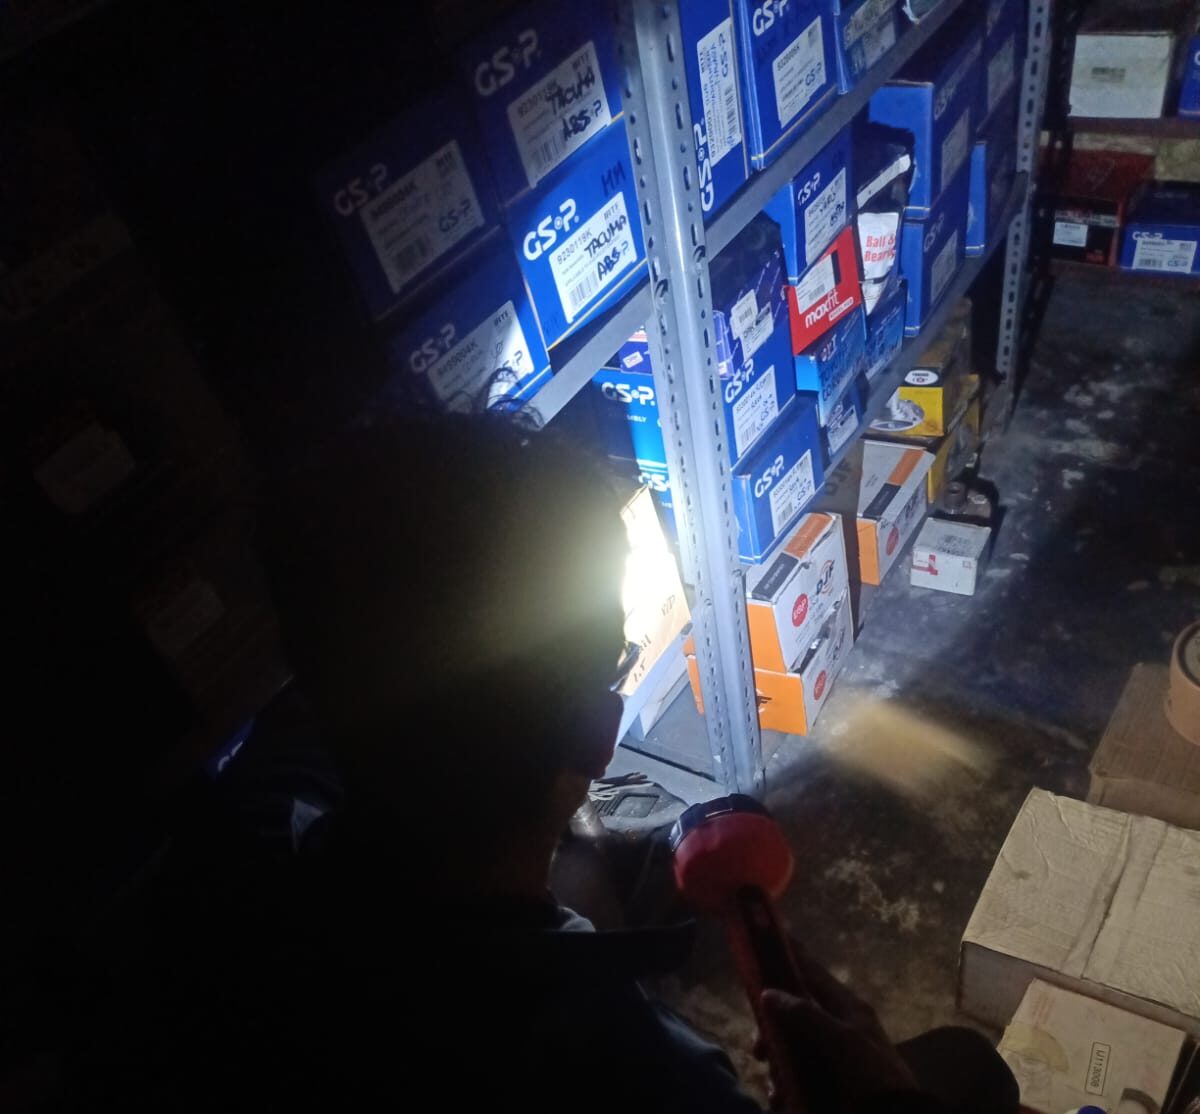 Uno de los trabajadores de un local de repuestos intentando encontrar un pedido en medio de la oscuridad.